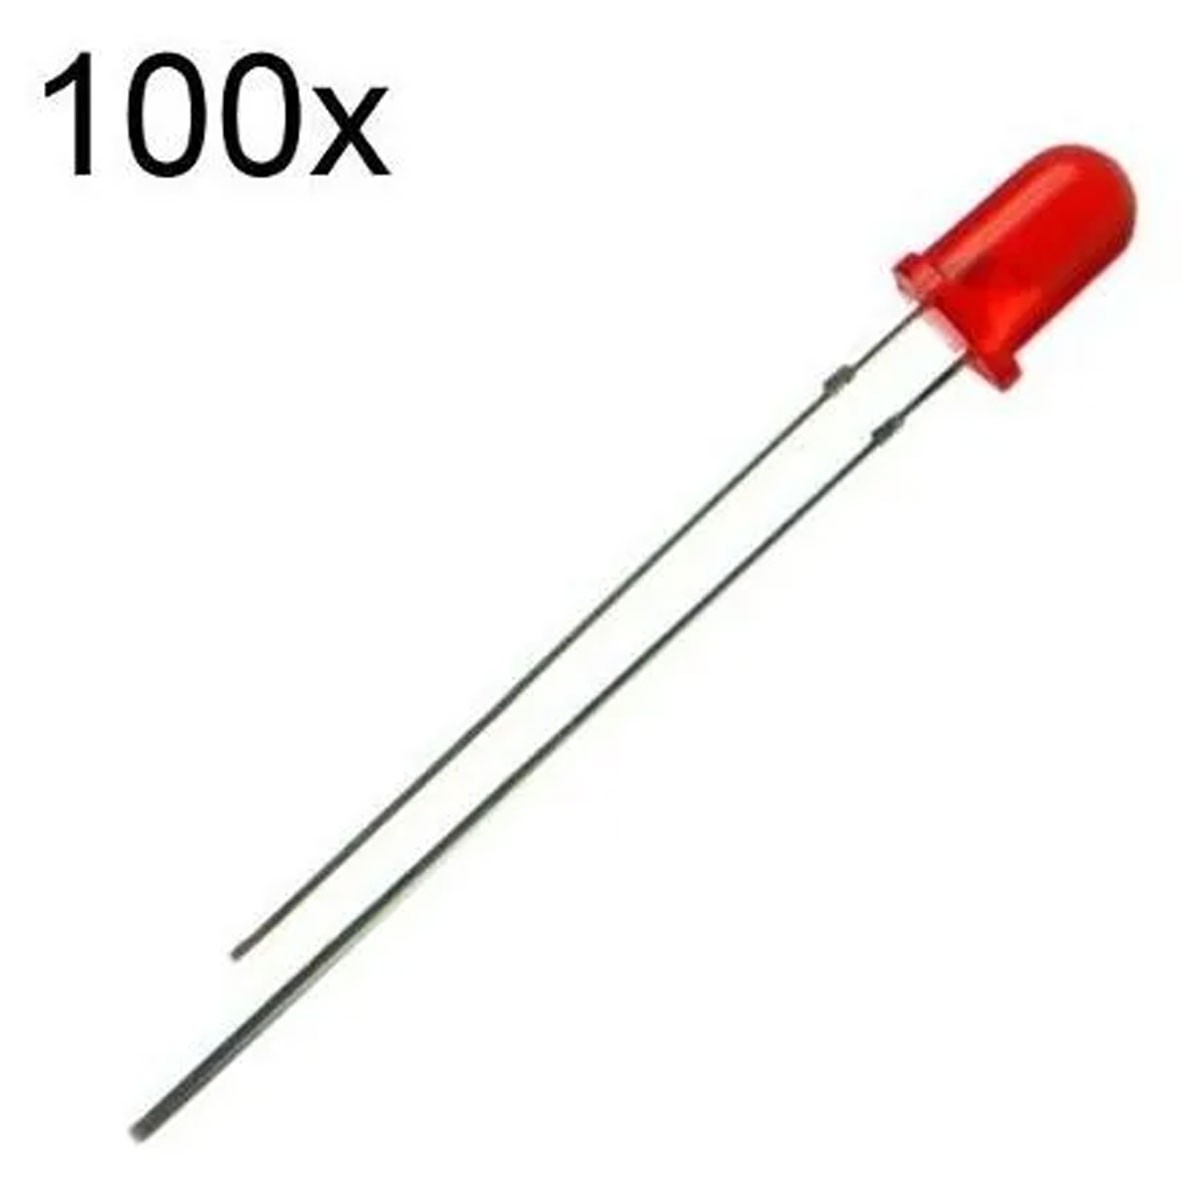 100x Led Vermelho Difuso 3mm